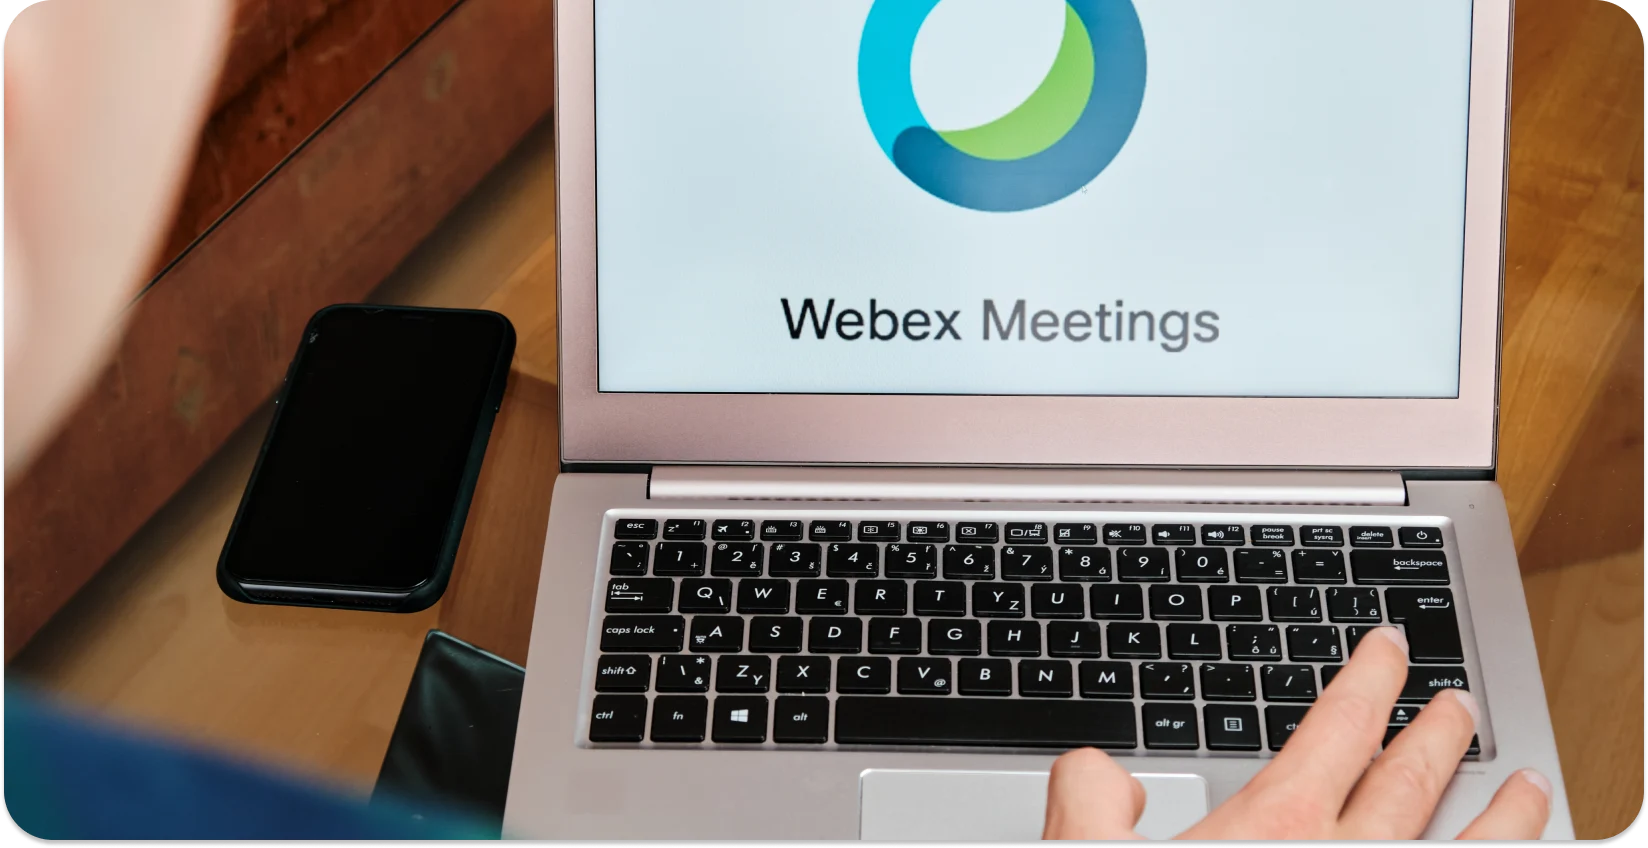 Uma pessoa iniciando uma reunião Webex em um laptop, pronta para transcrição automática.